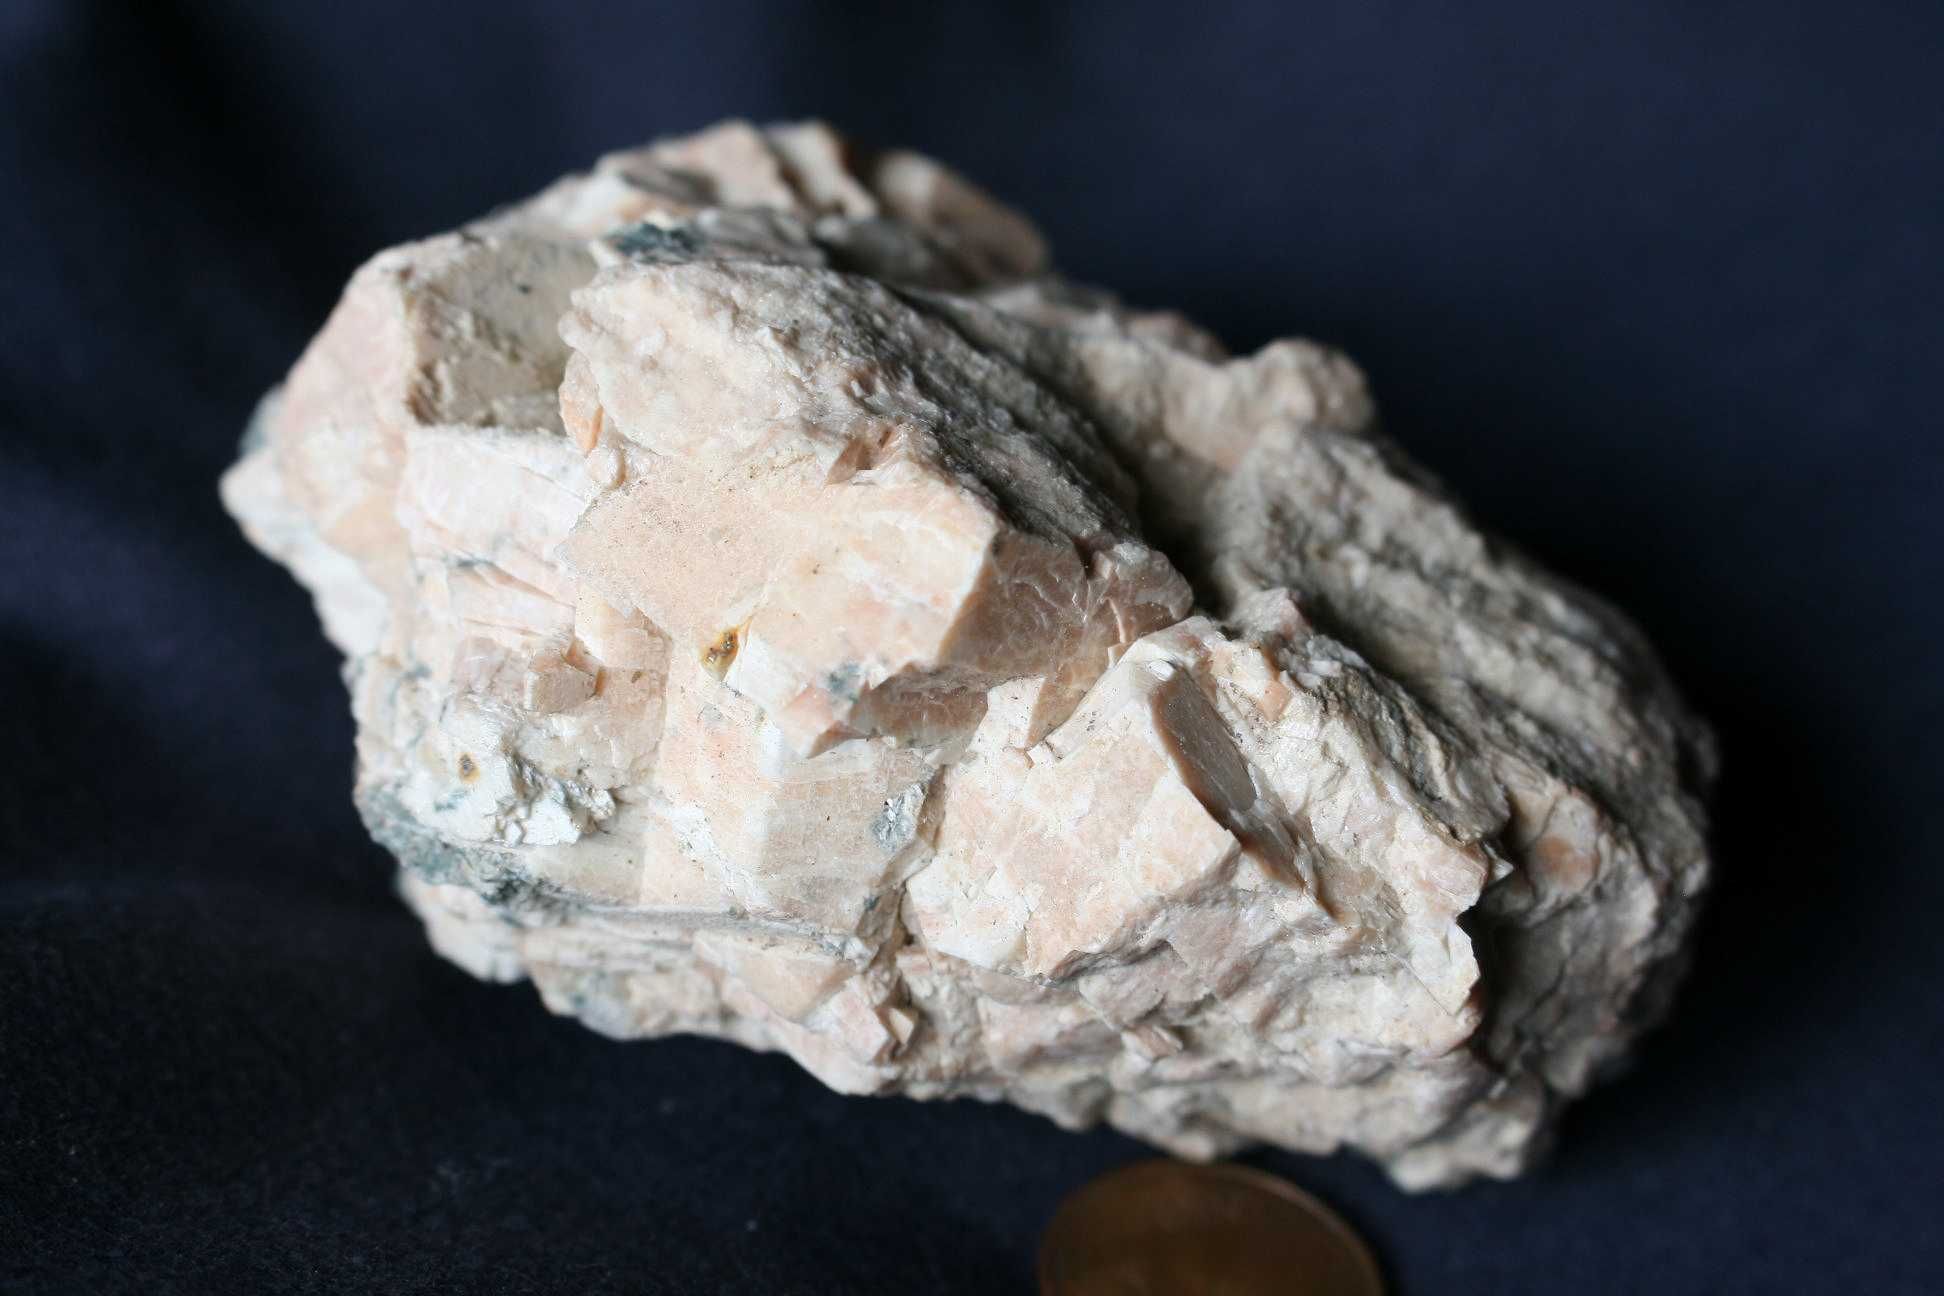 Minerais – Feldspato potássico de Pereira de Selão (inclui envio)